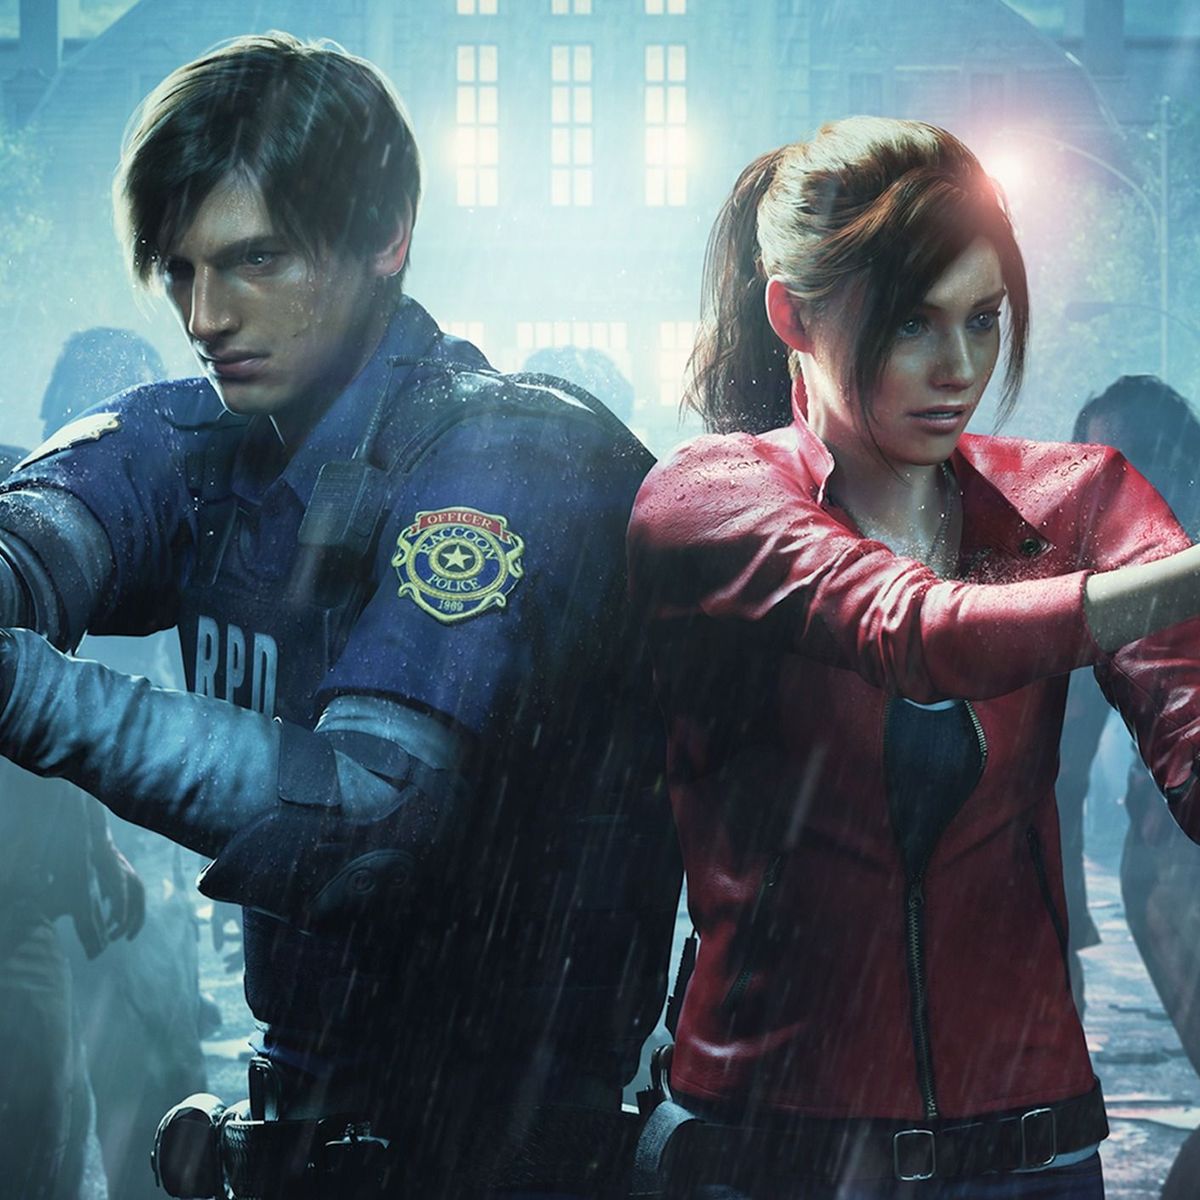 Las versiones para PS5 de Resident Evil 7, Resident Evil 2 y Resident Evil  3 llegan hoy – PlayStation.Blog en español